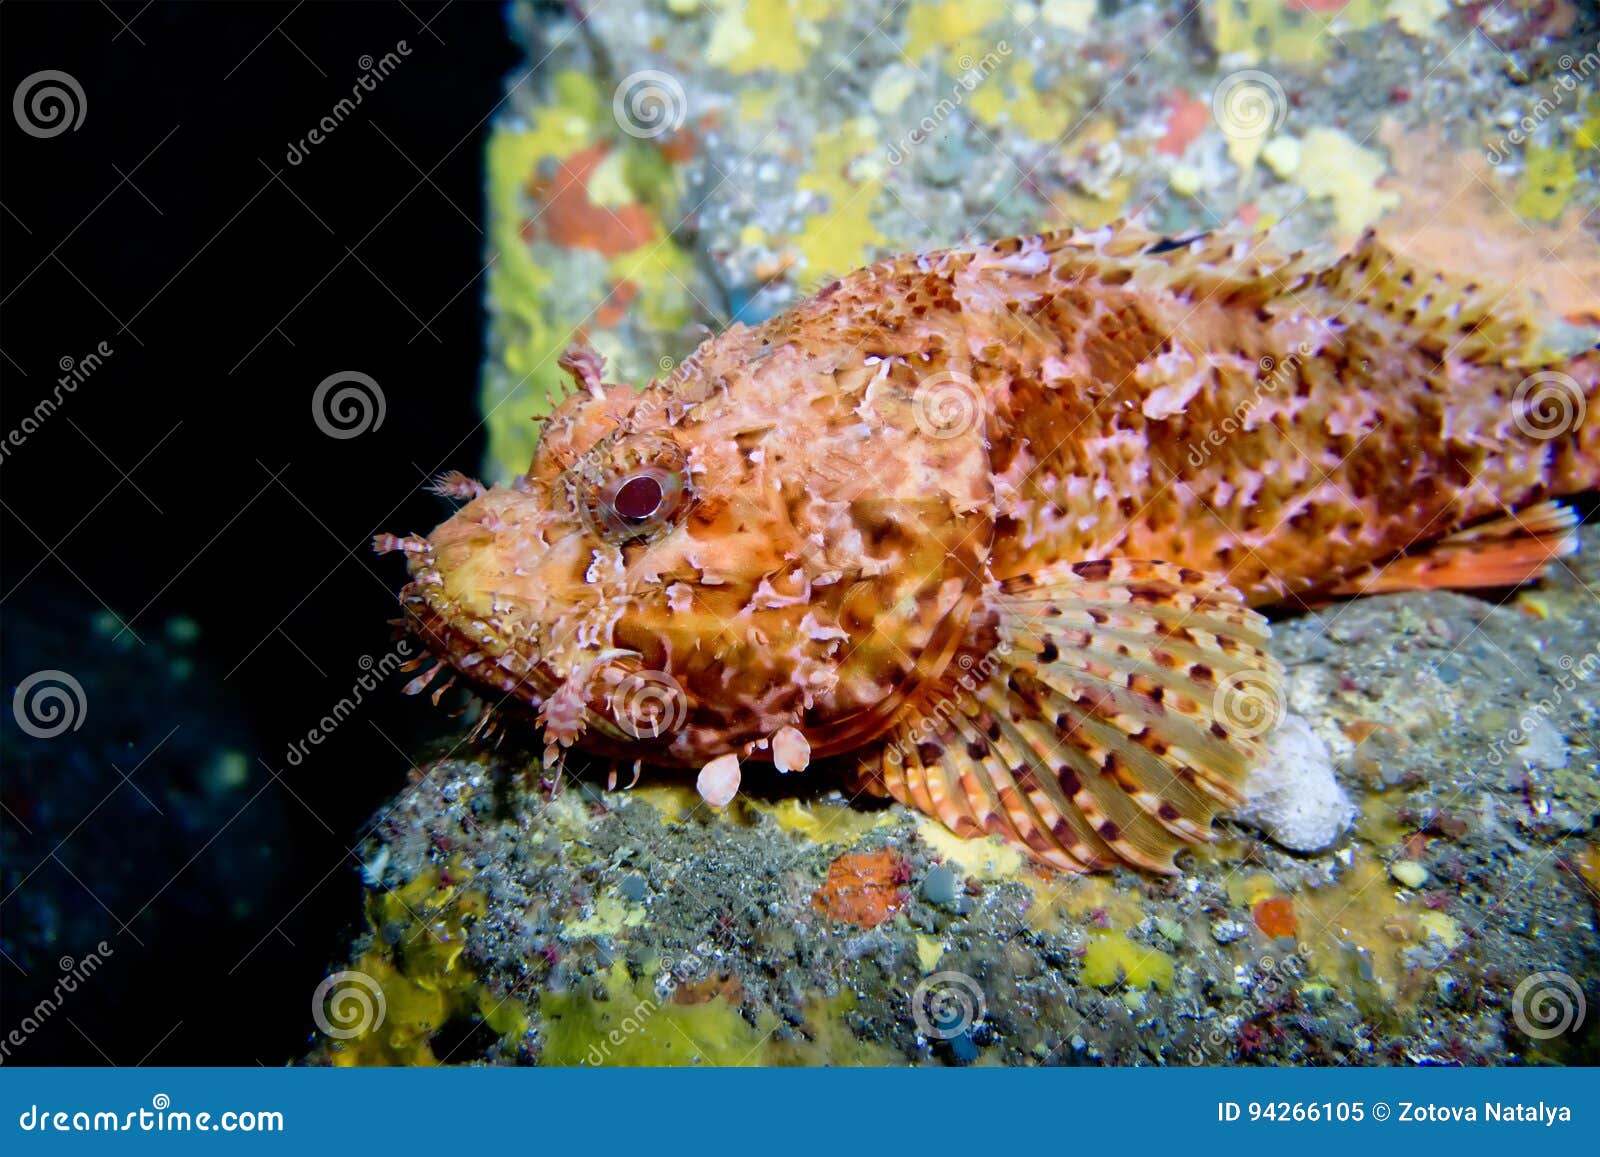 scorpionfish scorpora. mediterranean. menorca